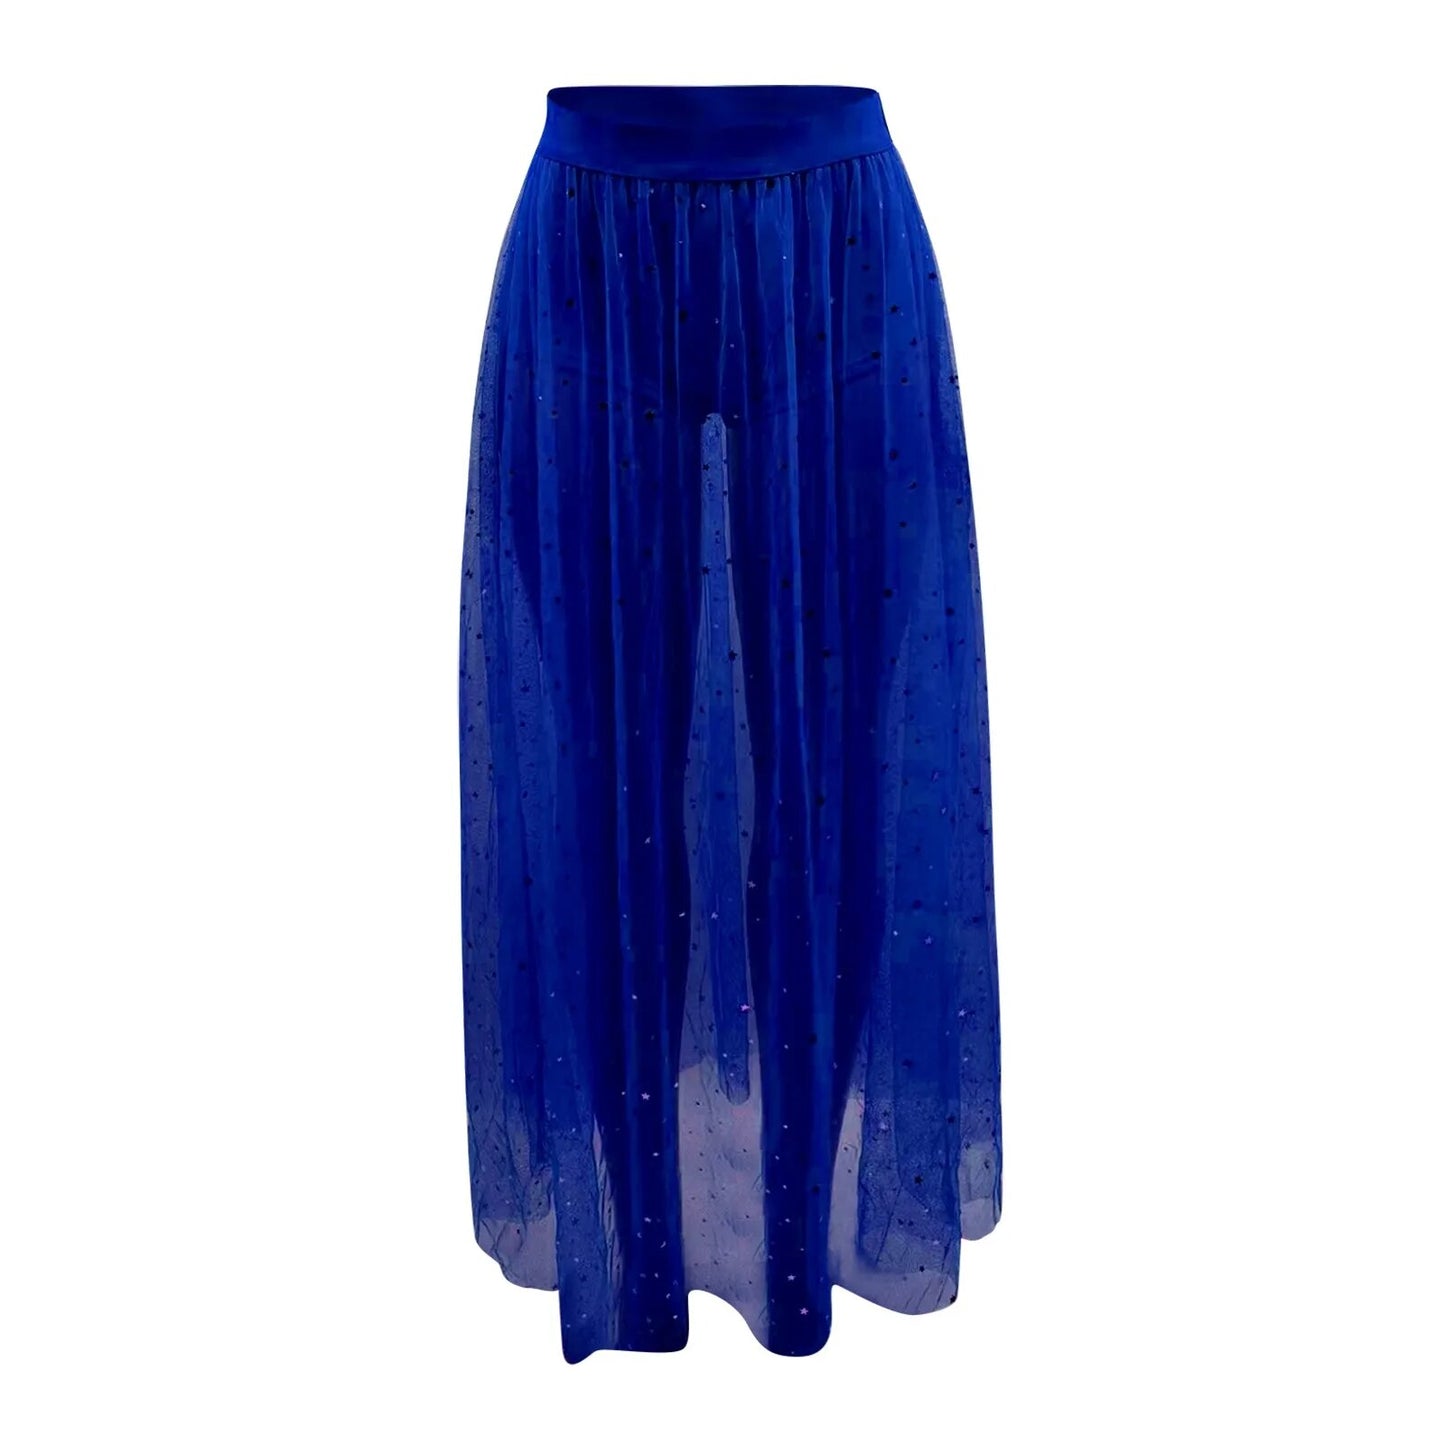 TEEK - Mesh High Waist Galaxy Skirt SKIRT theteekdotcom Blue S 